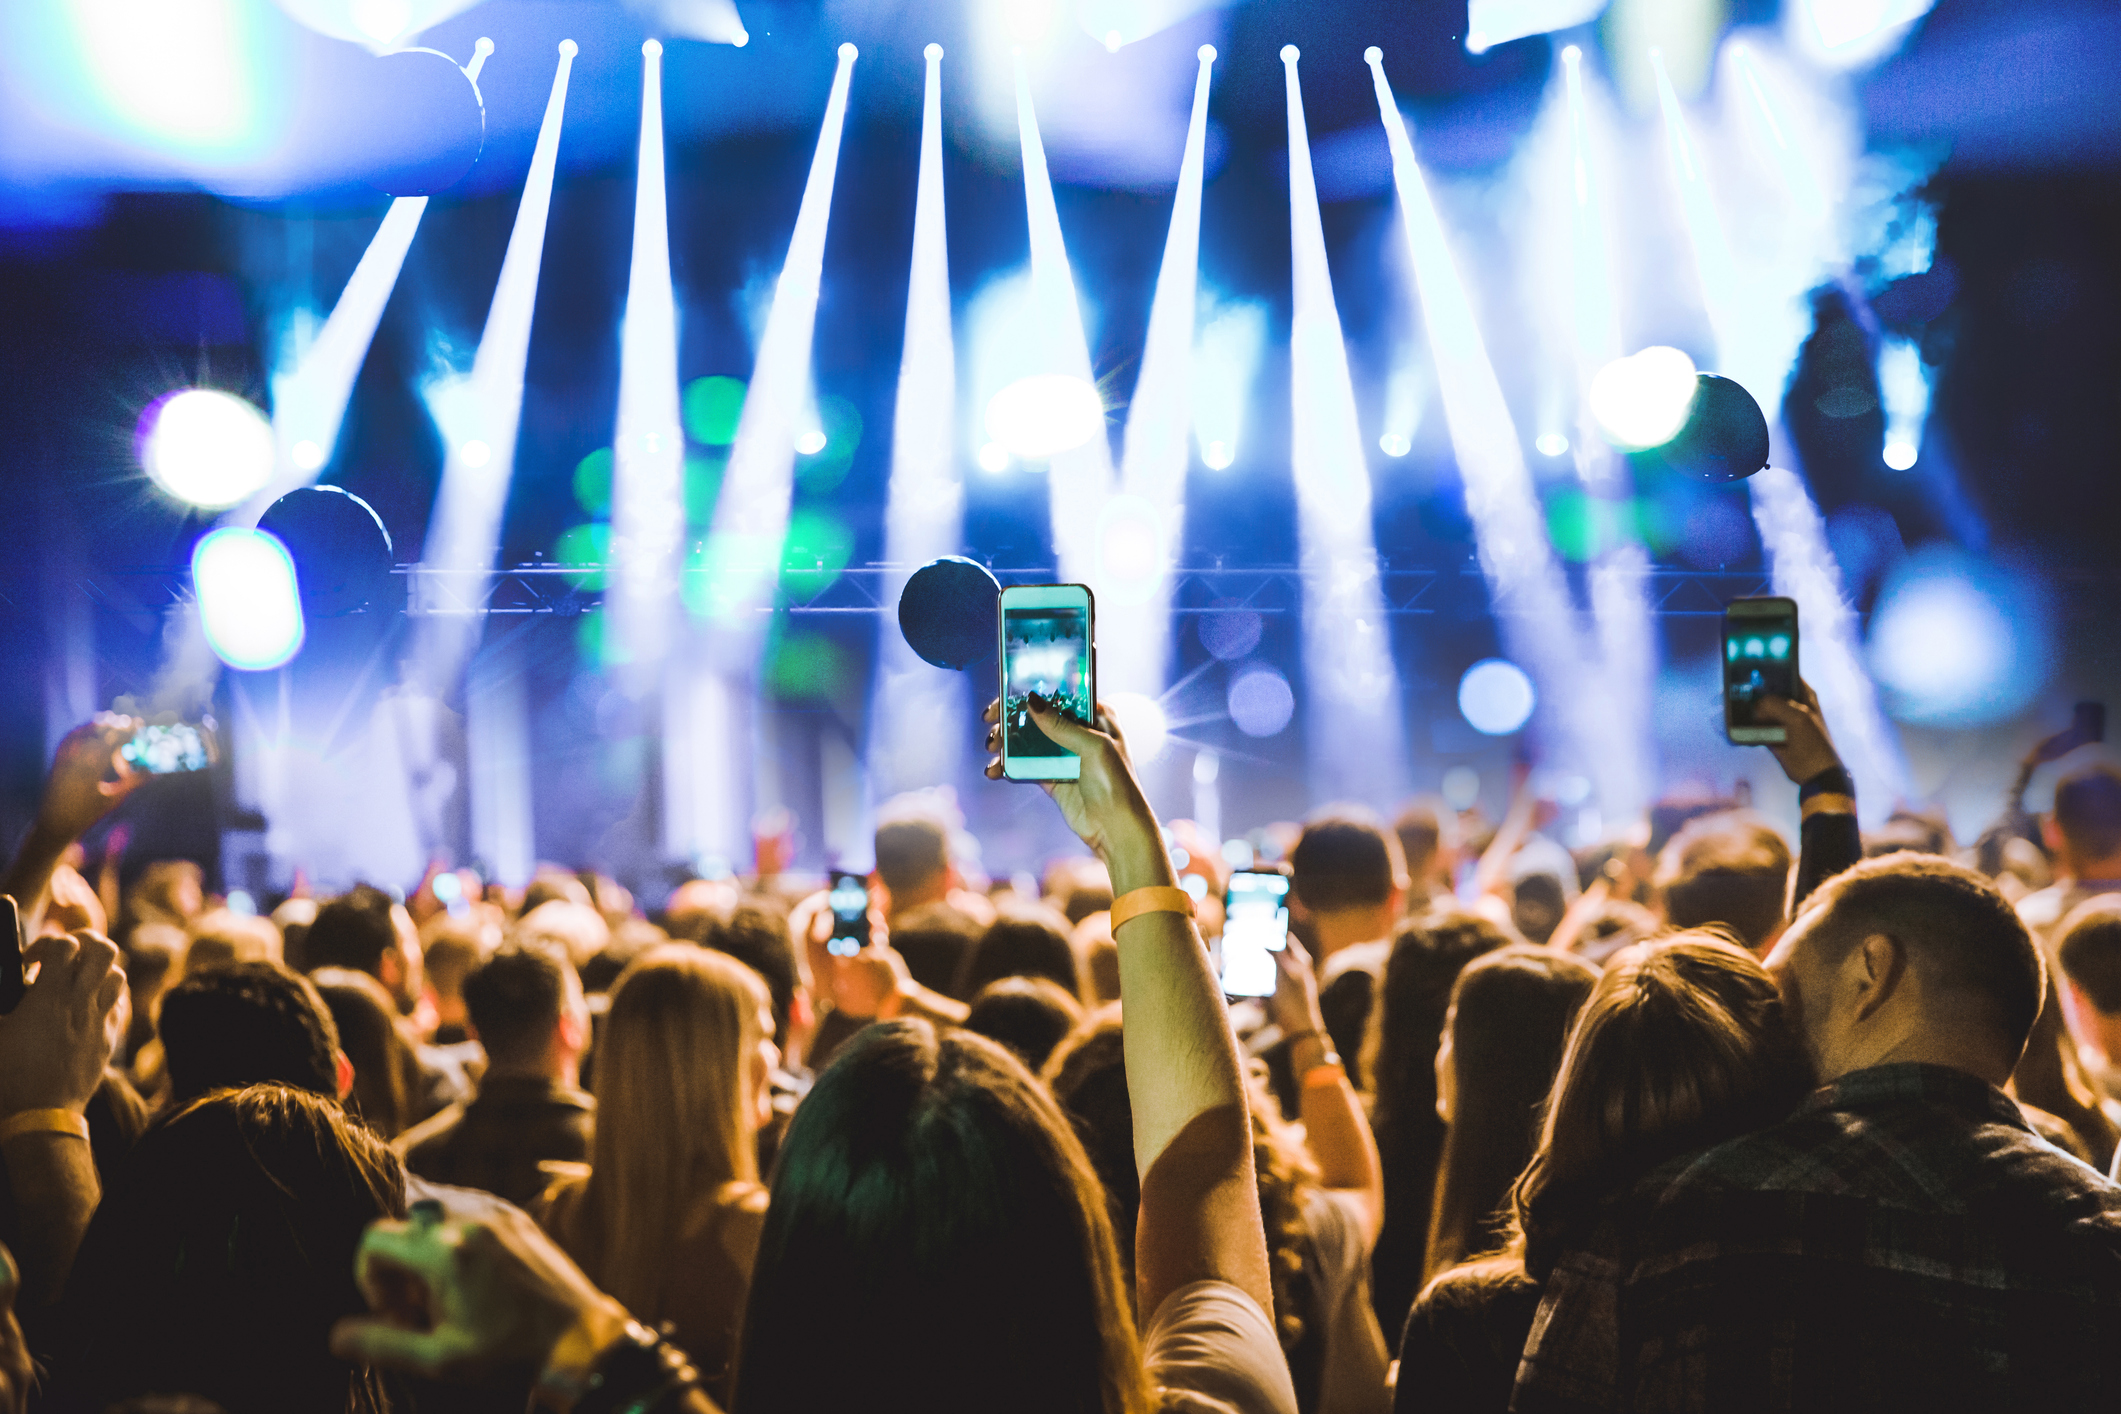 Une foule à un concert. Plusieurs personnes lèvent leurs téléphones pour filmer la scène, éclairé par des spots blancs. Le fond de l'image est bleu.